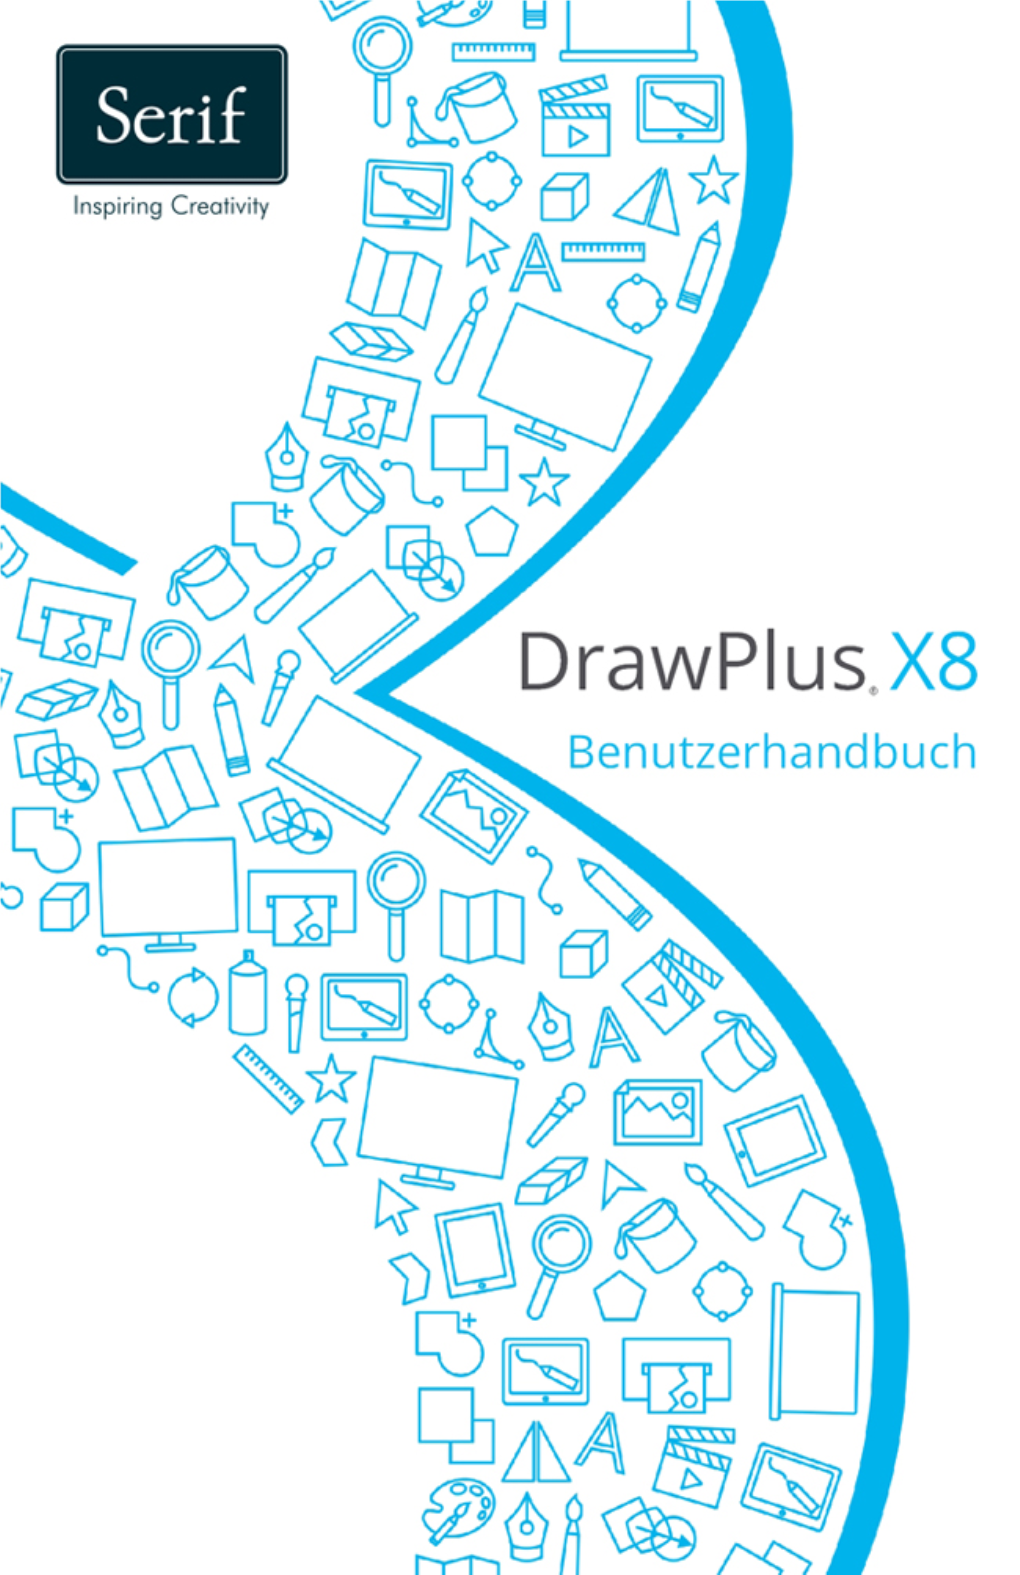 Drawplus X8 Benutzerhandbuch